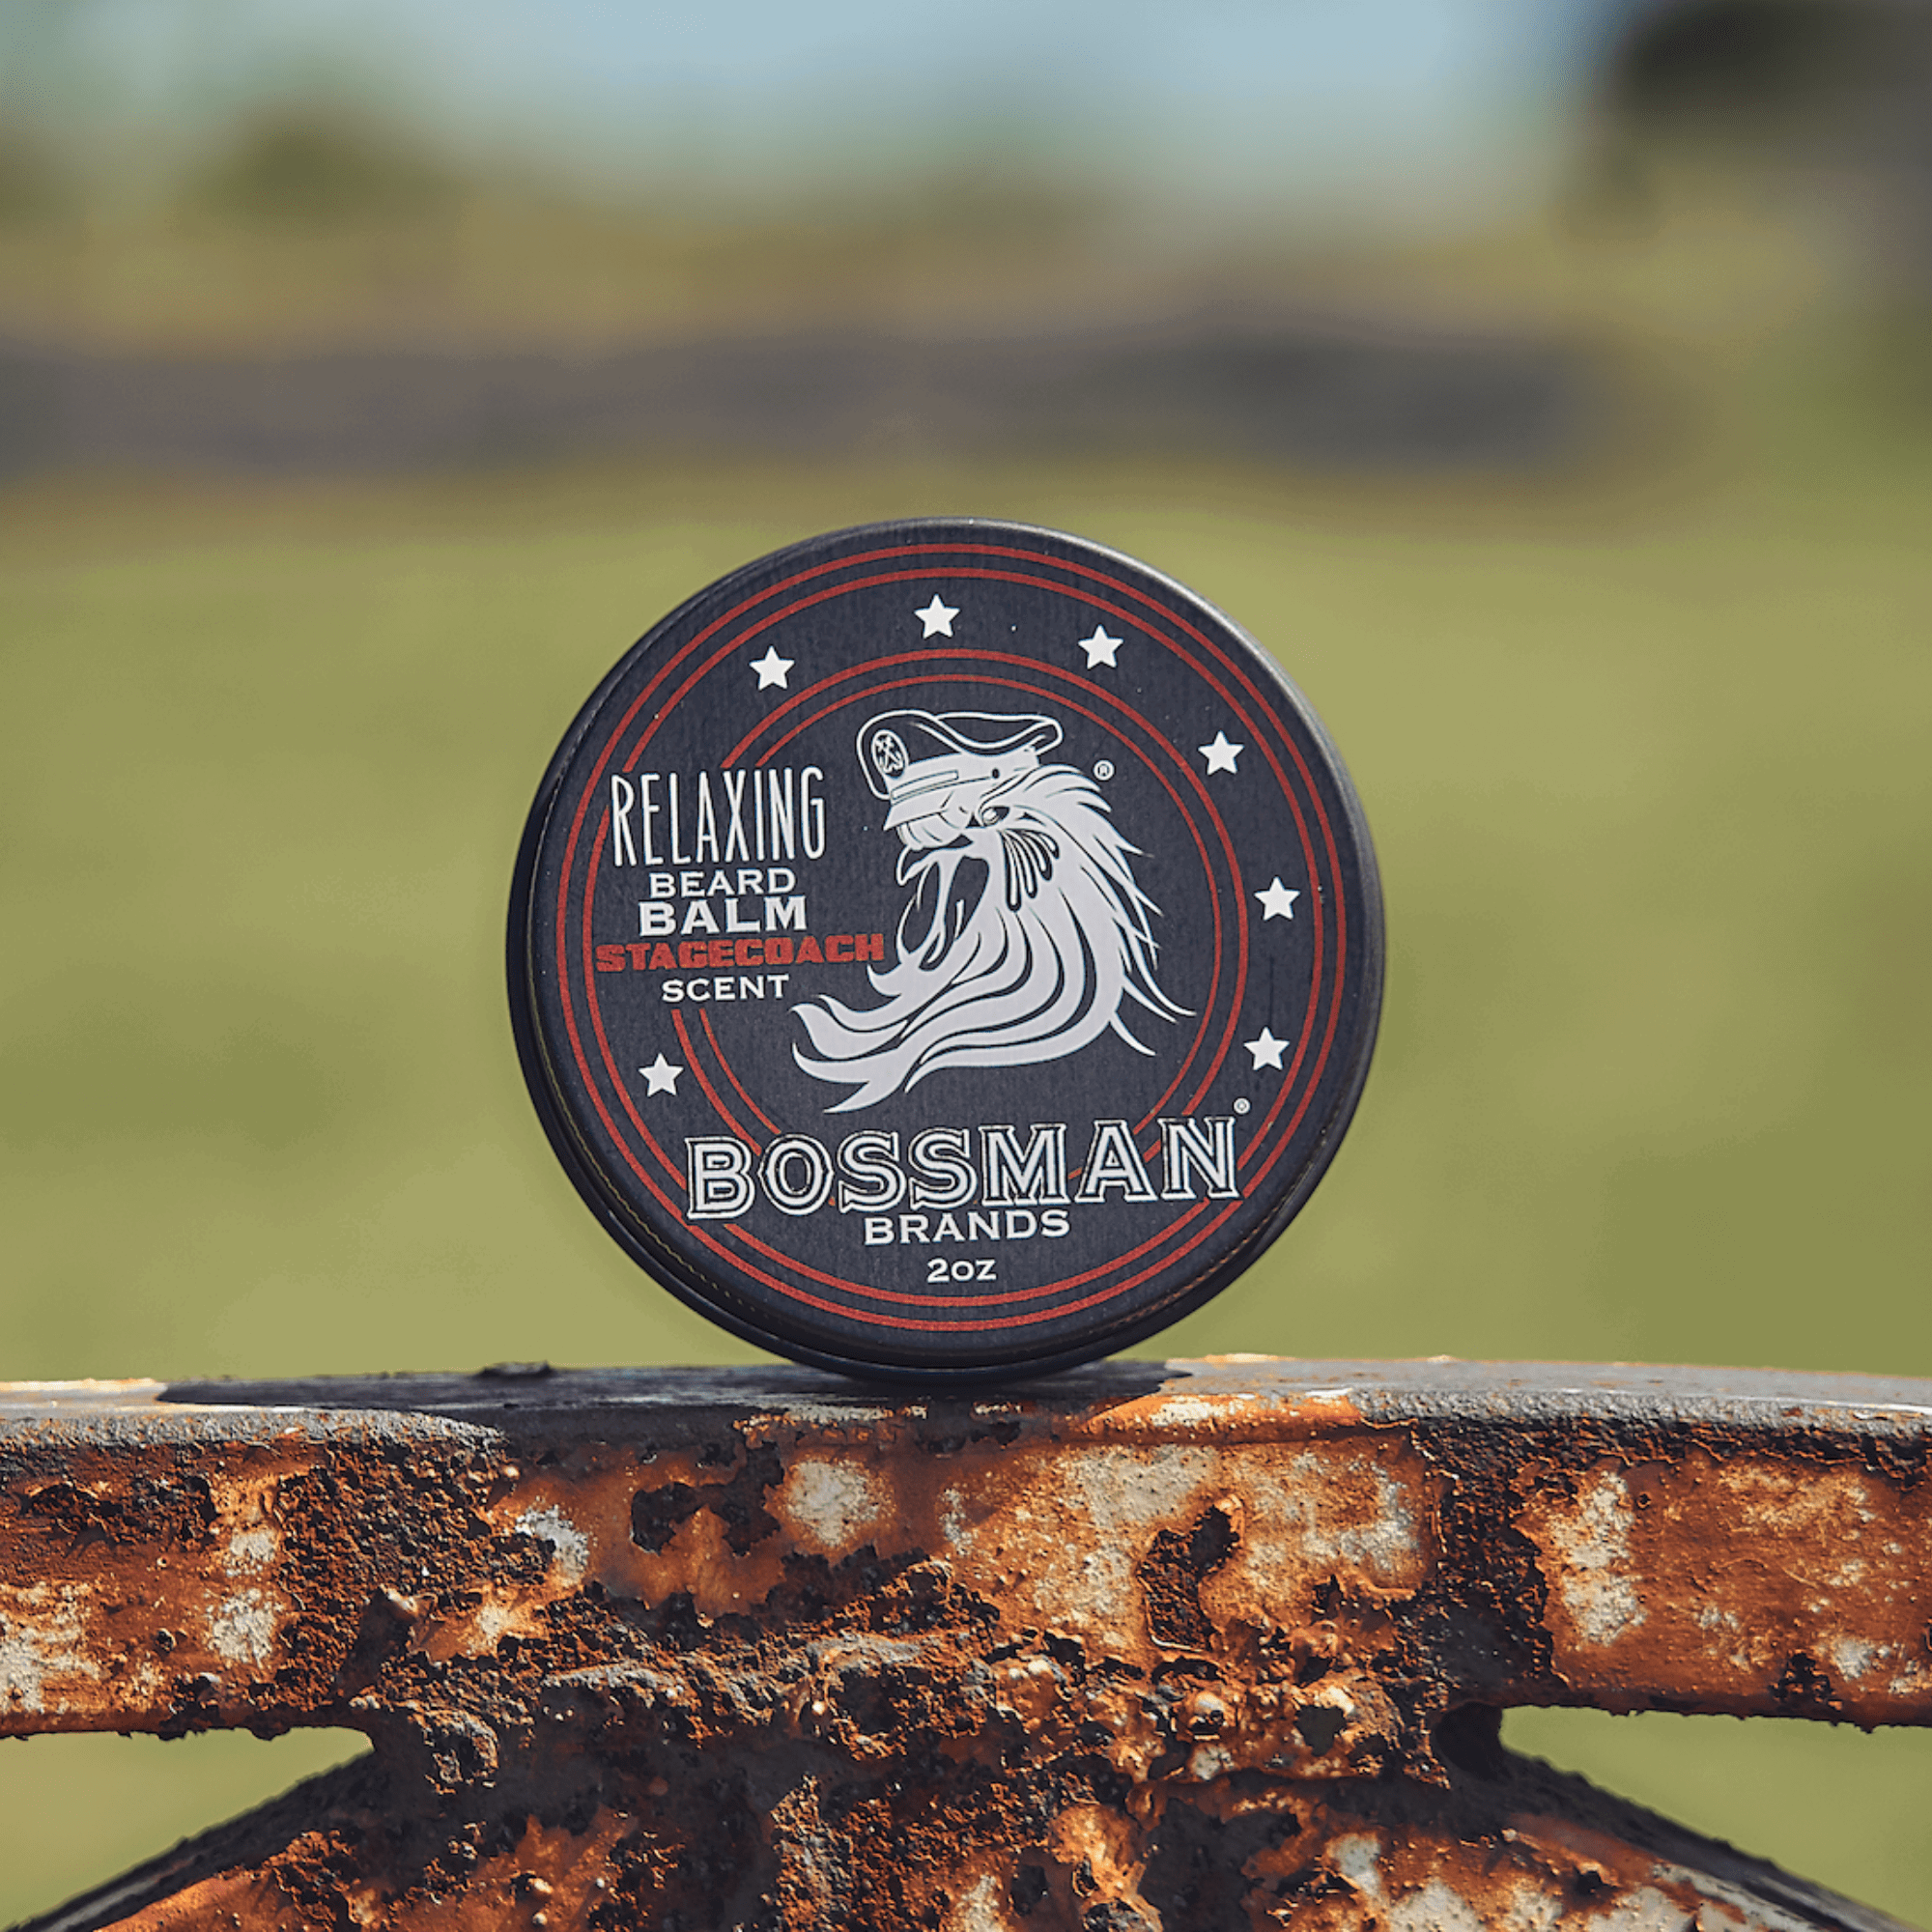 Relaxing Beard Balm Bossman Brands